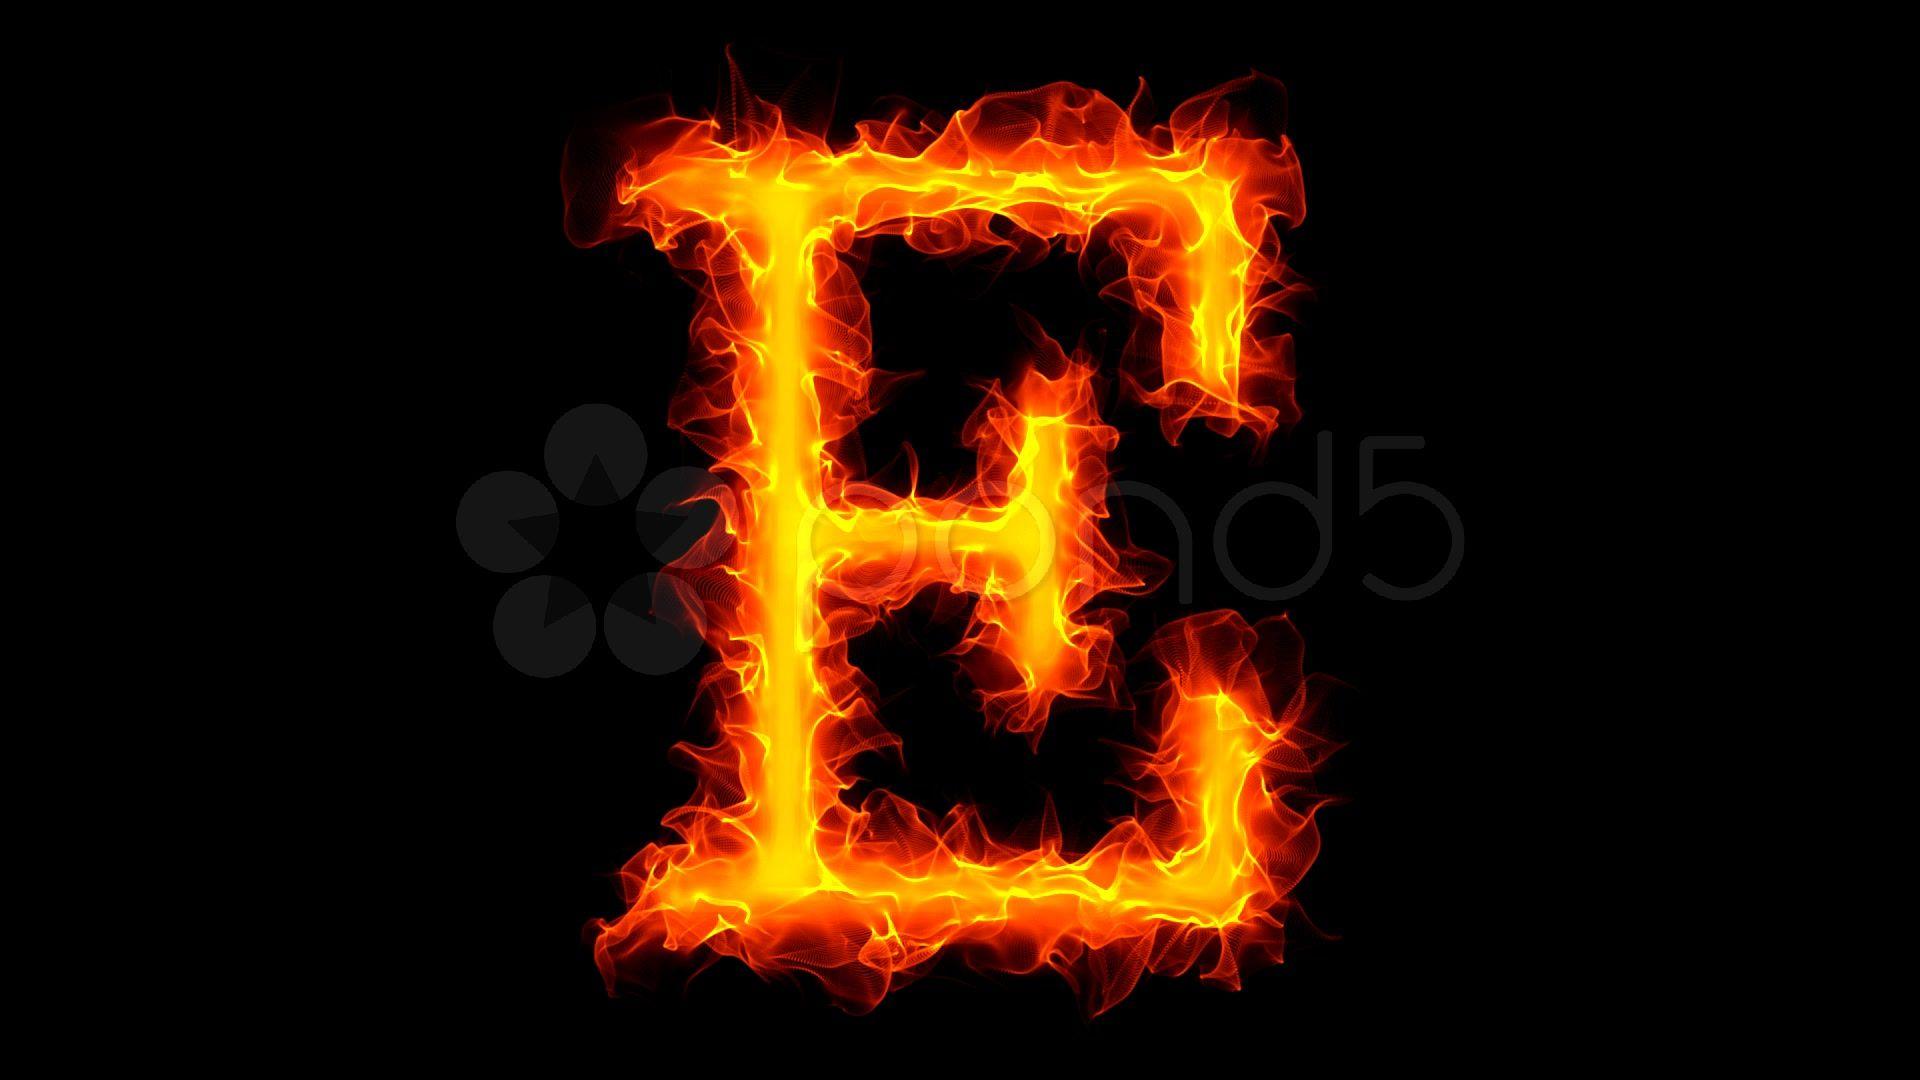 C th yf. Буква e. Буква е на черном фоне. Огненная буква e. Буква е на аватарку.